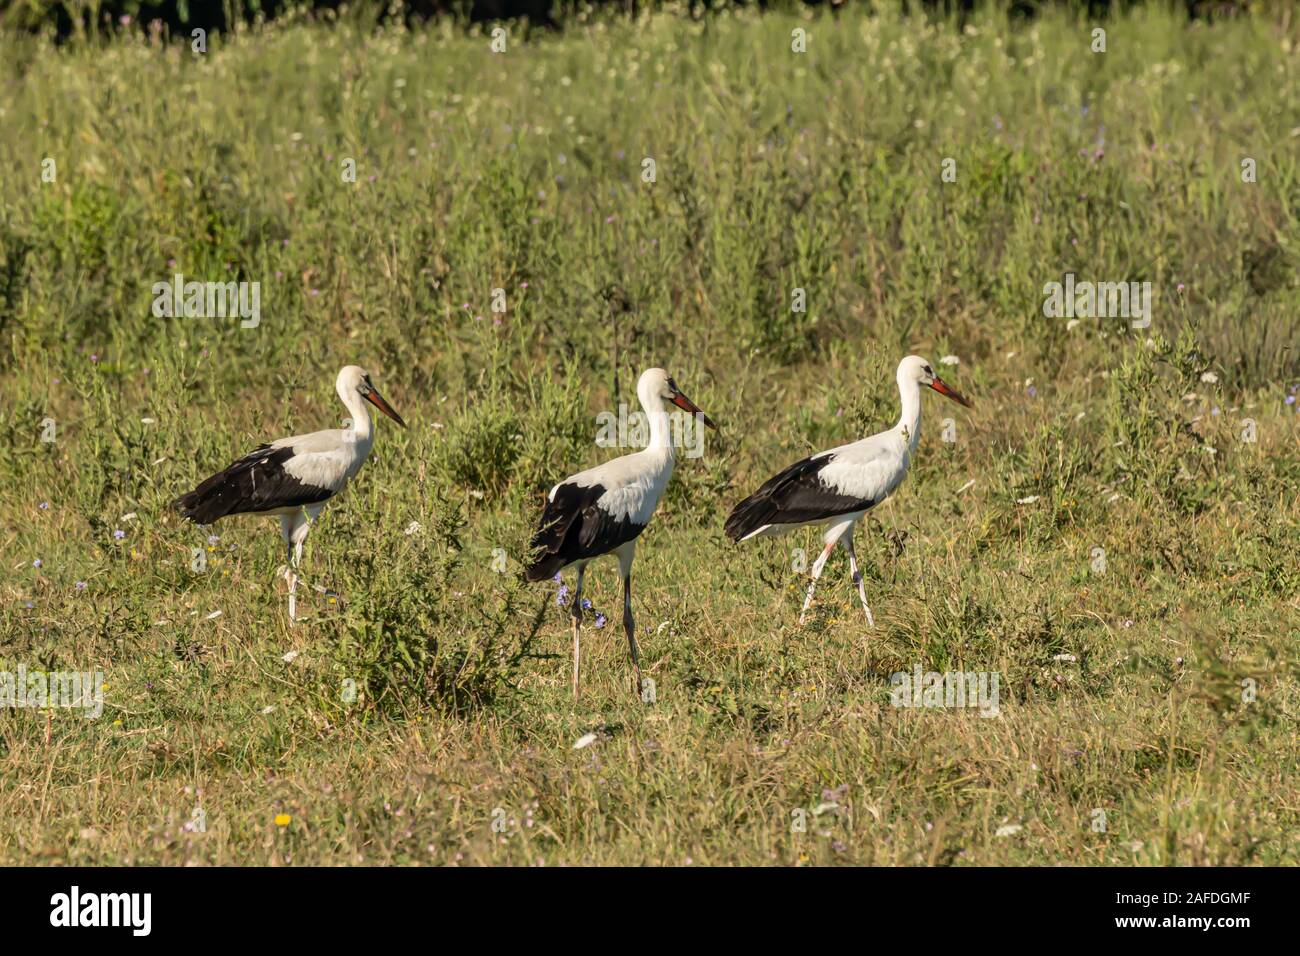 Cicogna bianca, Ciconia ciconia, grande uccello, Stork famiglia Ciconiidae. Il suo piumaggio è prevalentemente bianco con il nero sulle ali. Animalia, Chordata, Aves, CIC Foto Stock